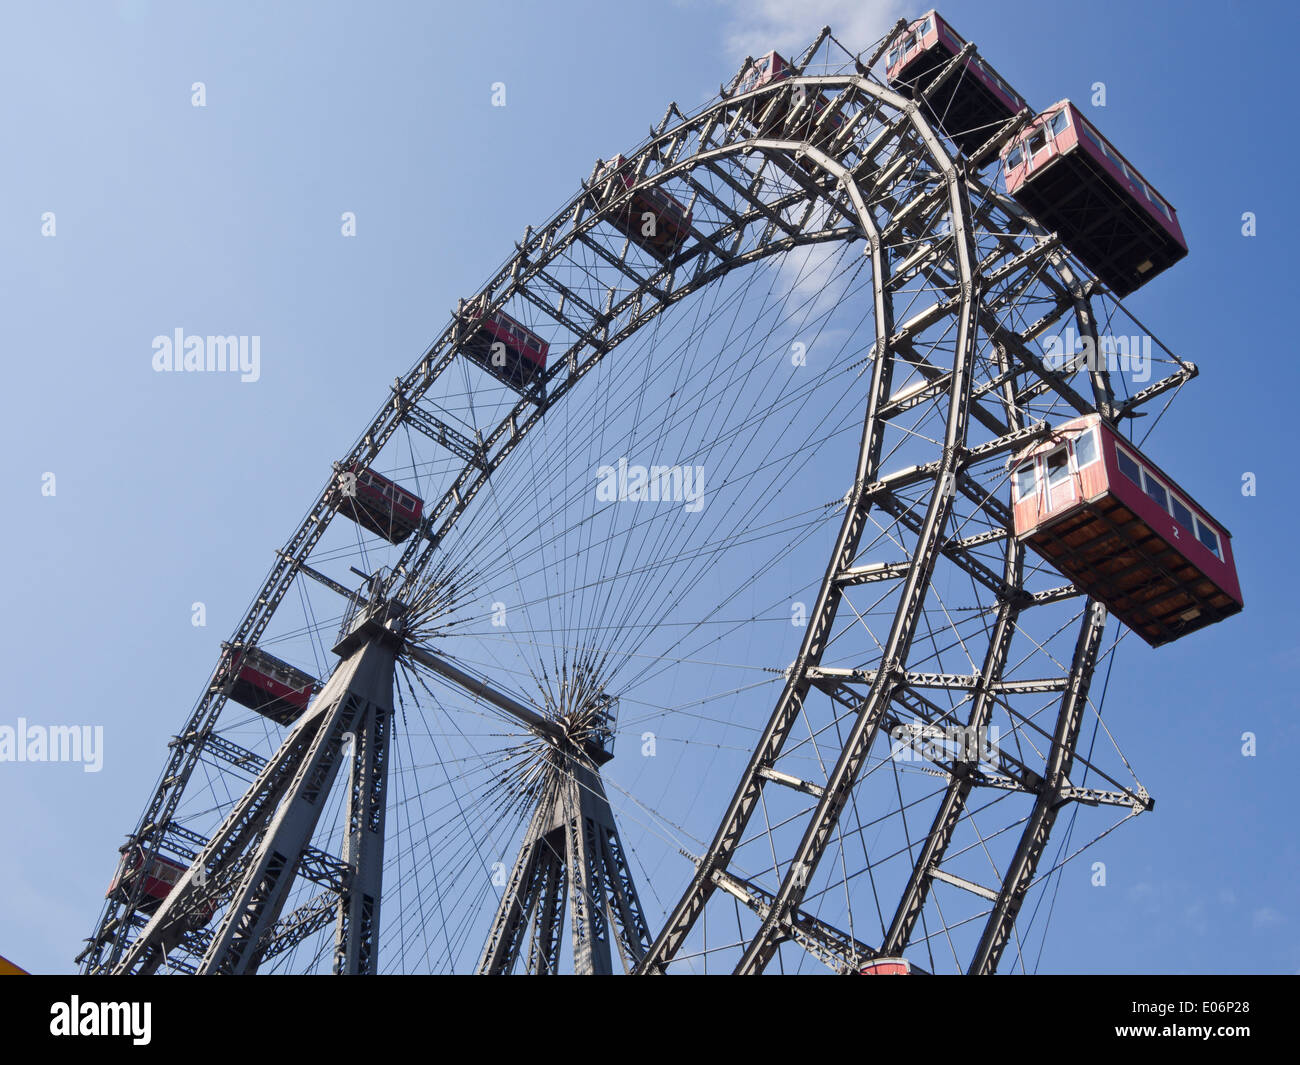 Wiener Riesenrad, grande roue dans le parc d'attractions Prater, construite en 1897 sur 65 mètres de haut, Vienne Autriche Banque D'Images